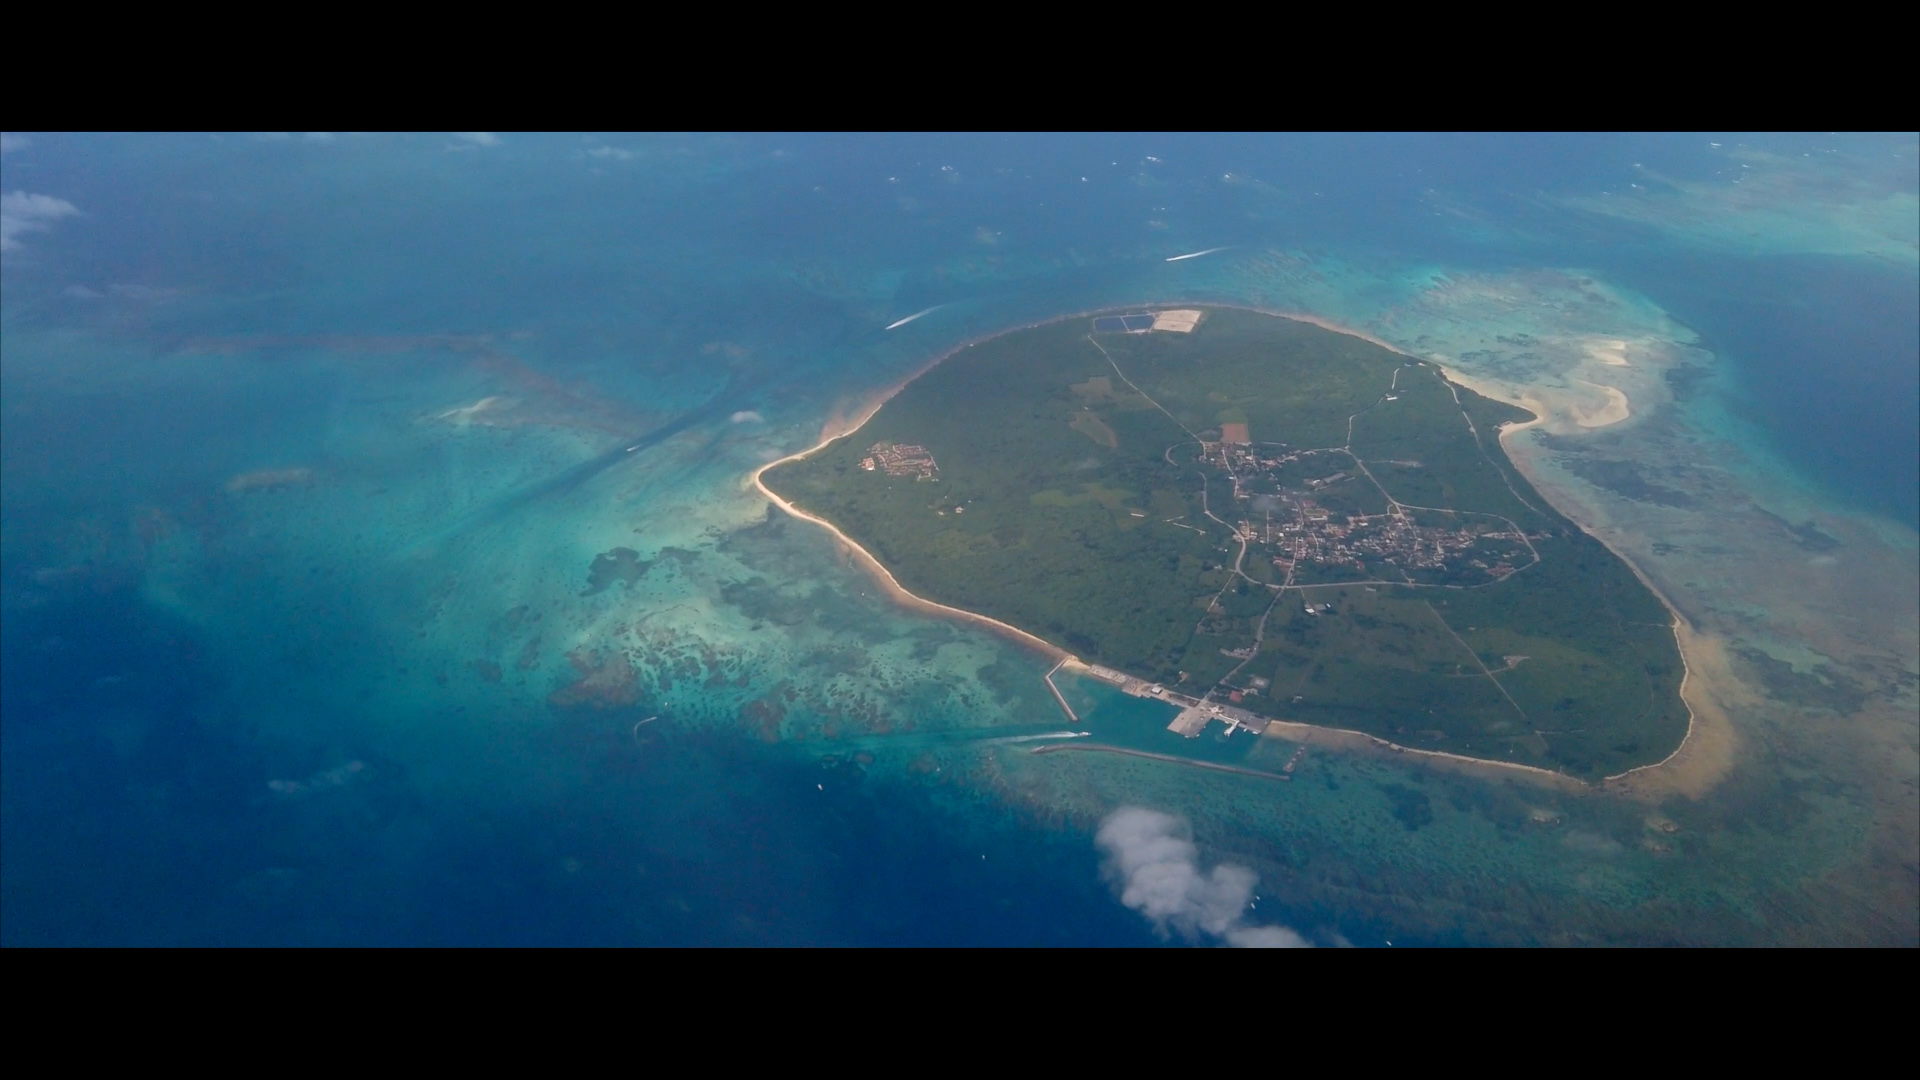 Die Insel Taketomi aus der Luftperspektive.